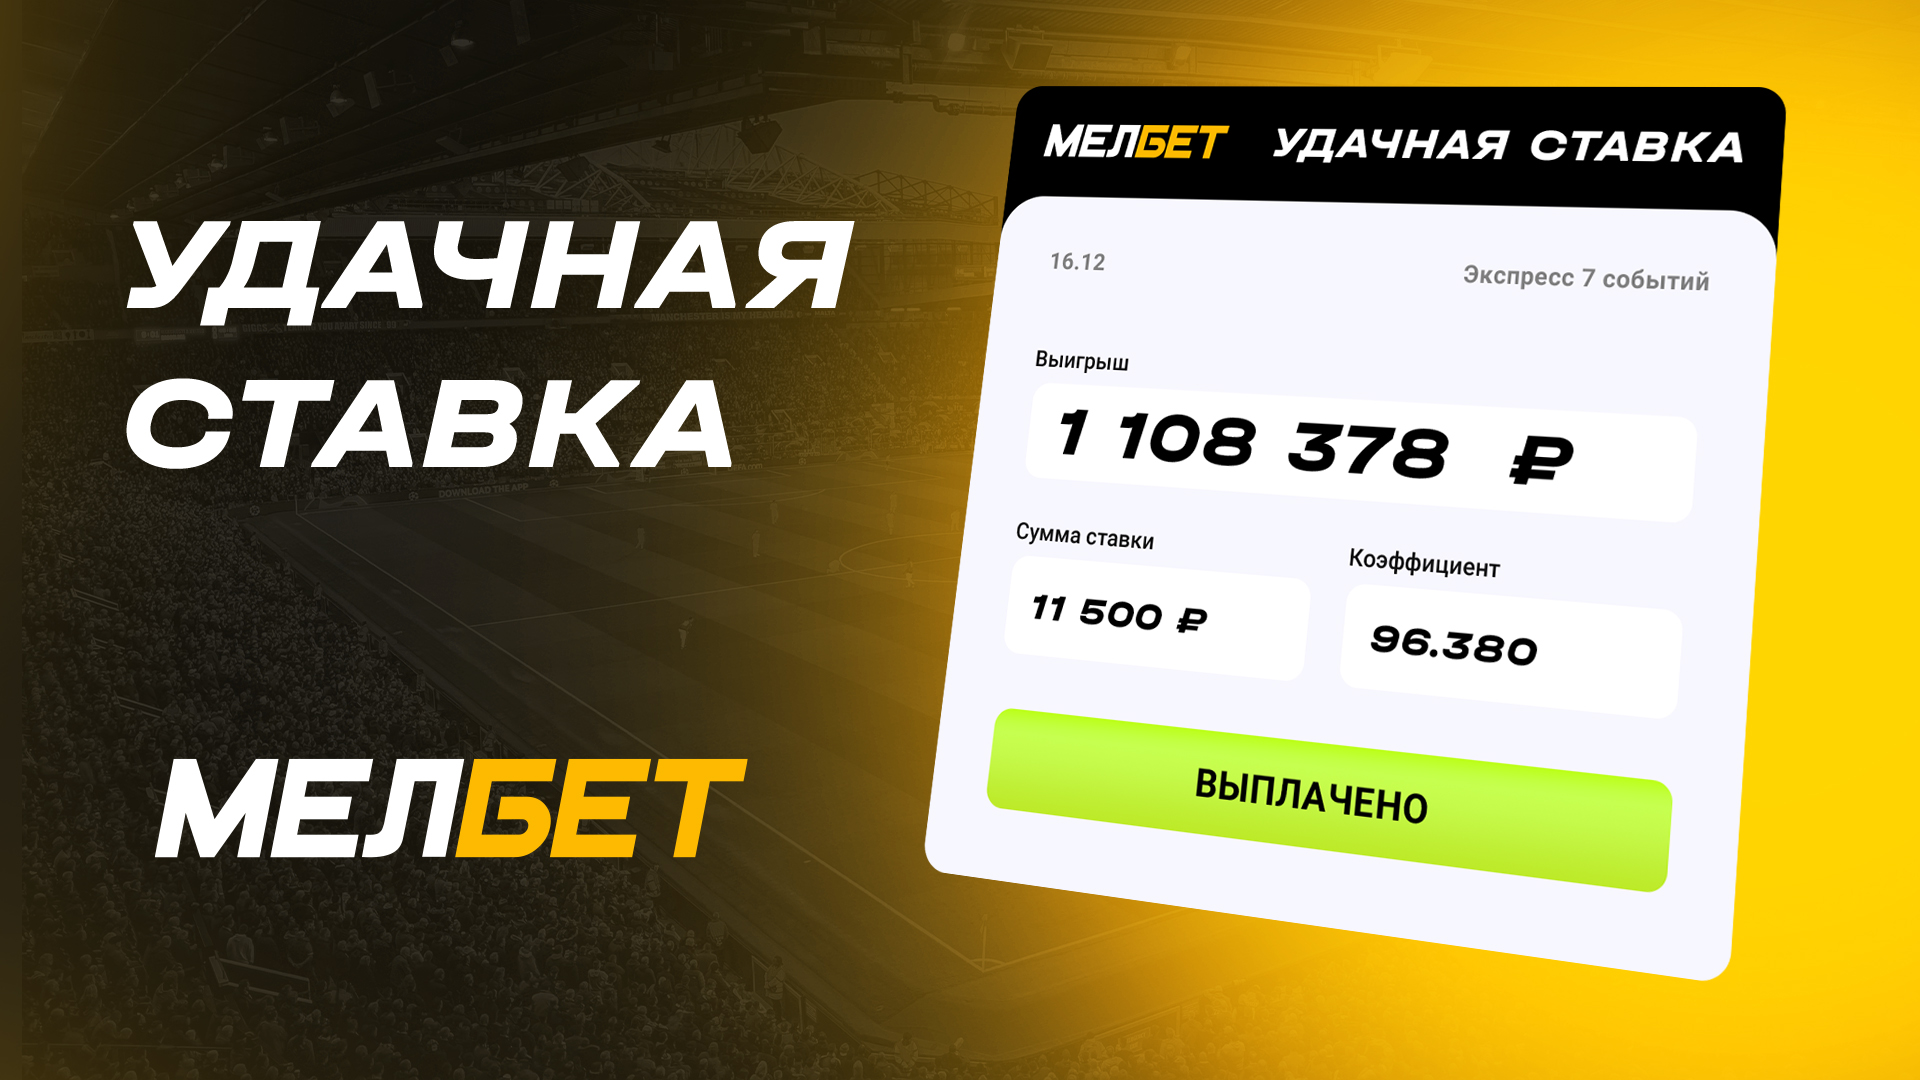 Клиент БК Мелбет выиграл более миллиона рублей с экспресса на CS:GO c коэффициентом 96